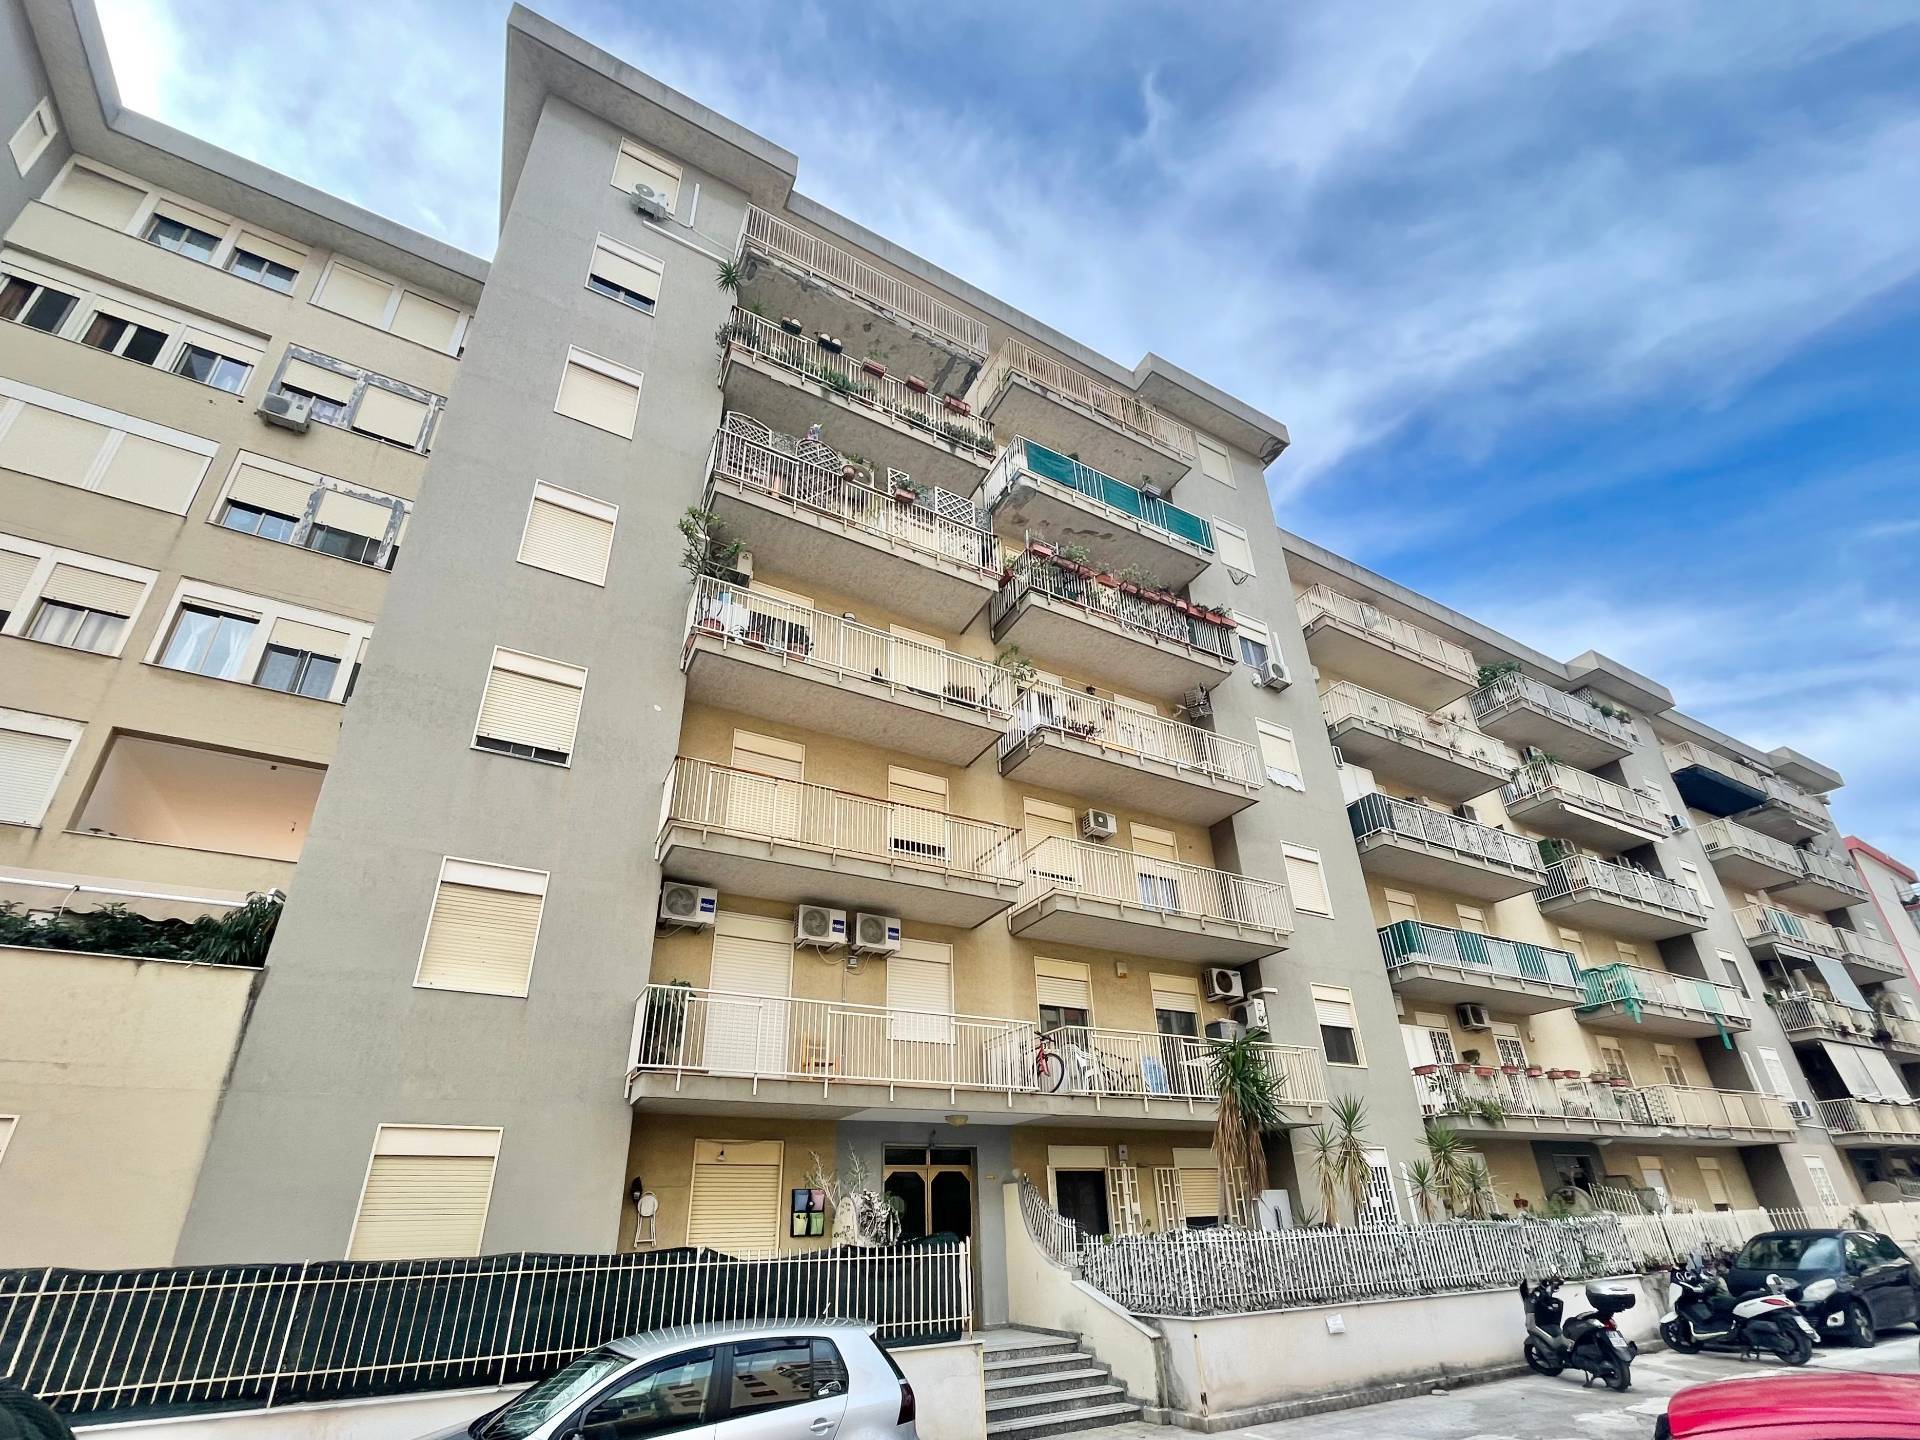 Appartamento in vendita a Palermo, 4 locali, zona Località: Michelangelo, prezzo € 135.000 | PortaleAgenzieImmobiliari.it